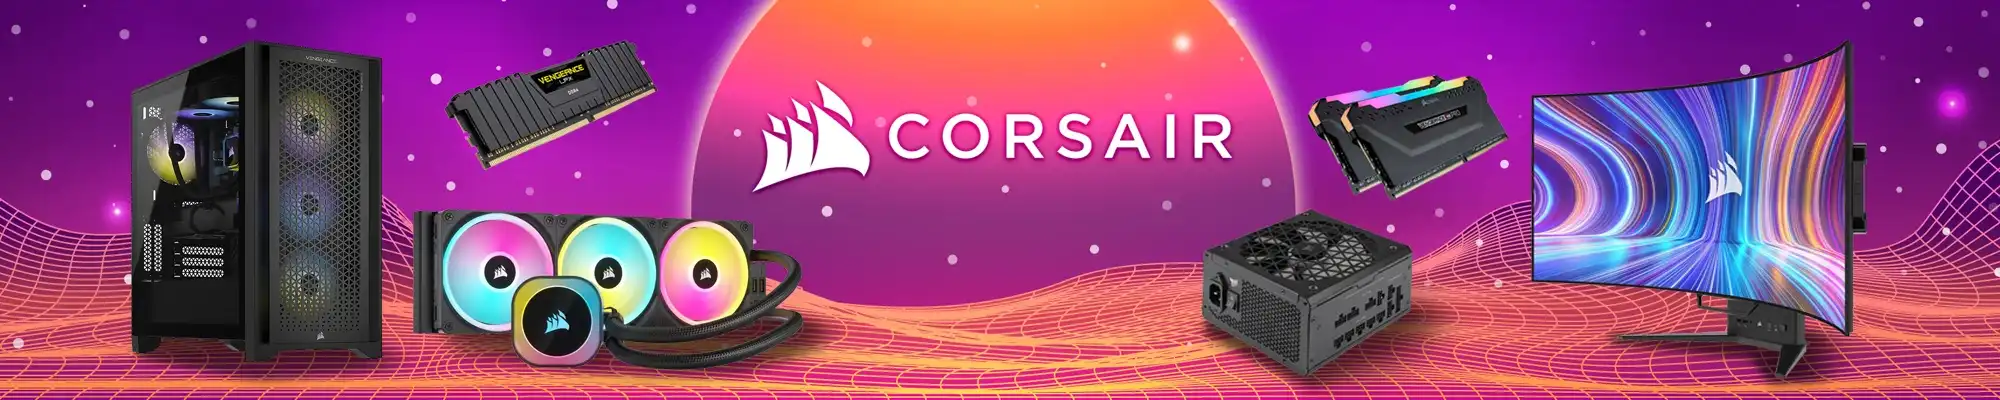 CORSAIR-2